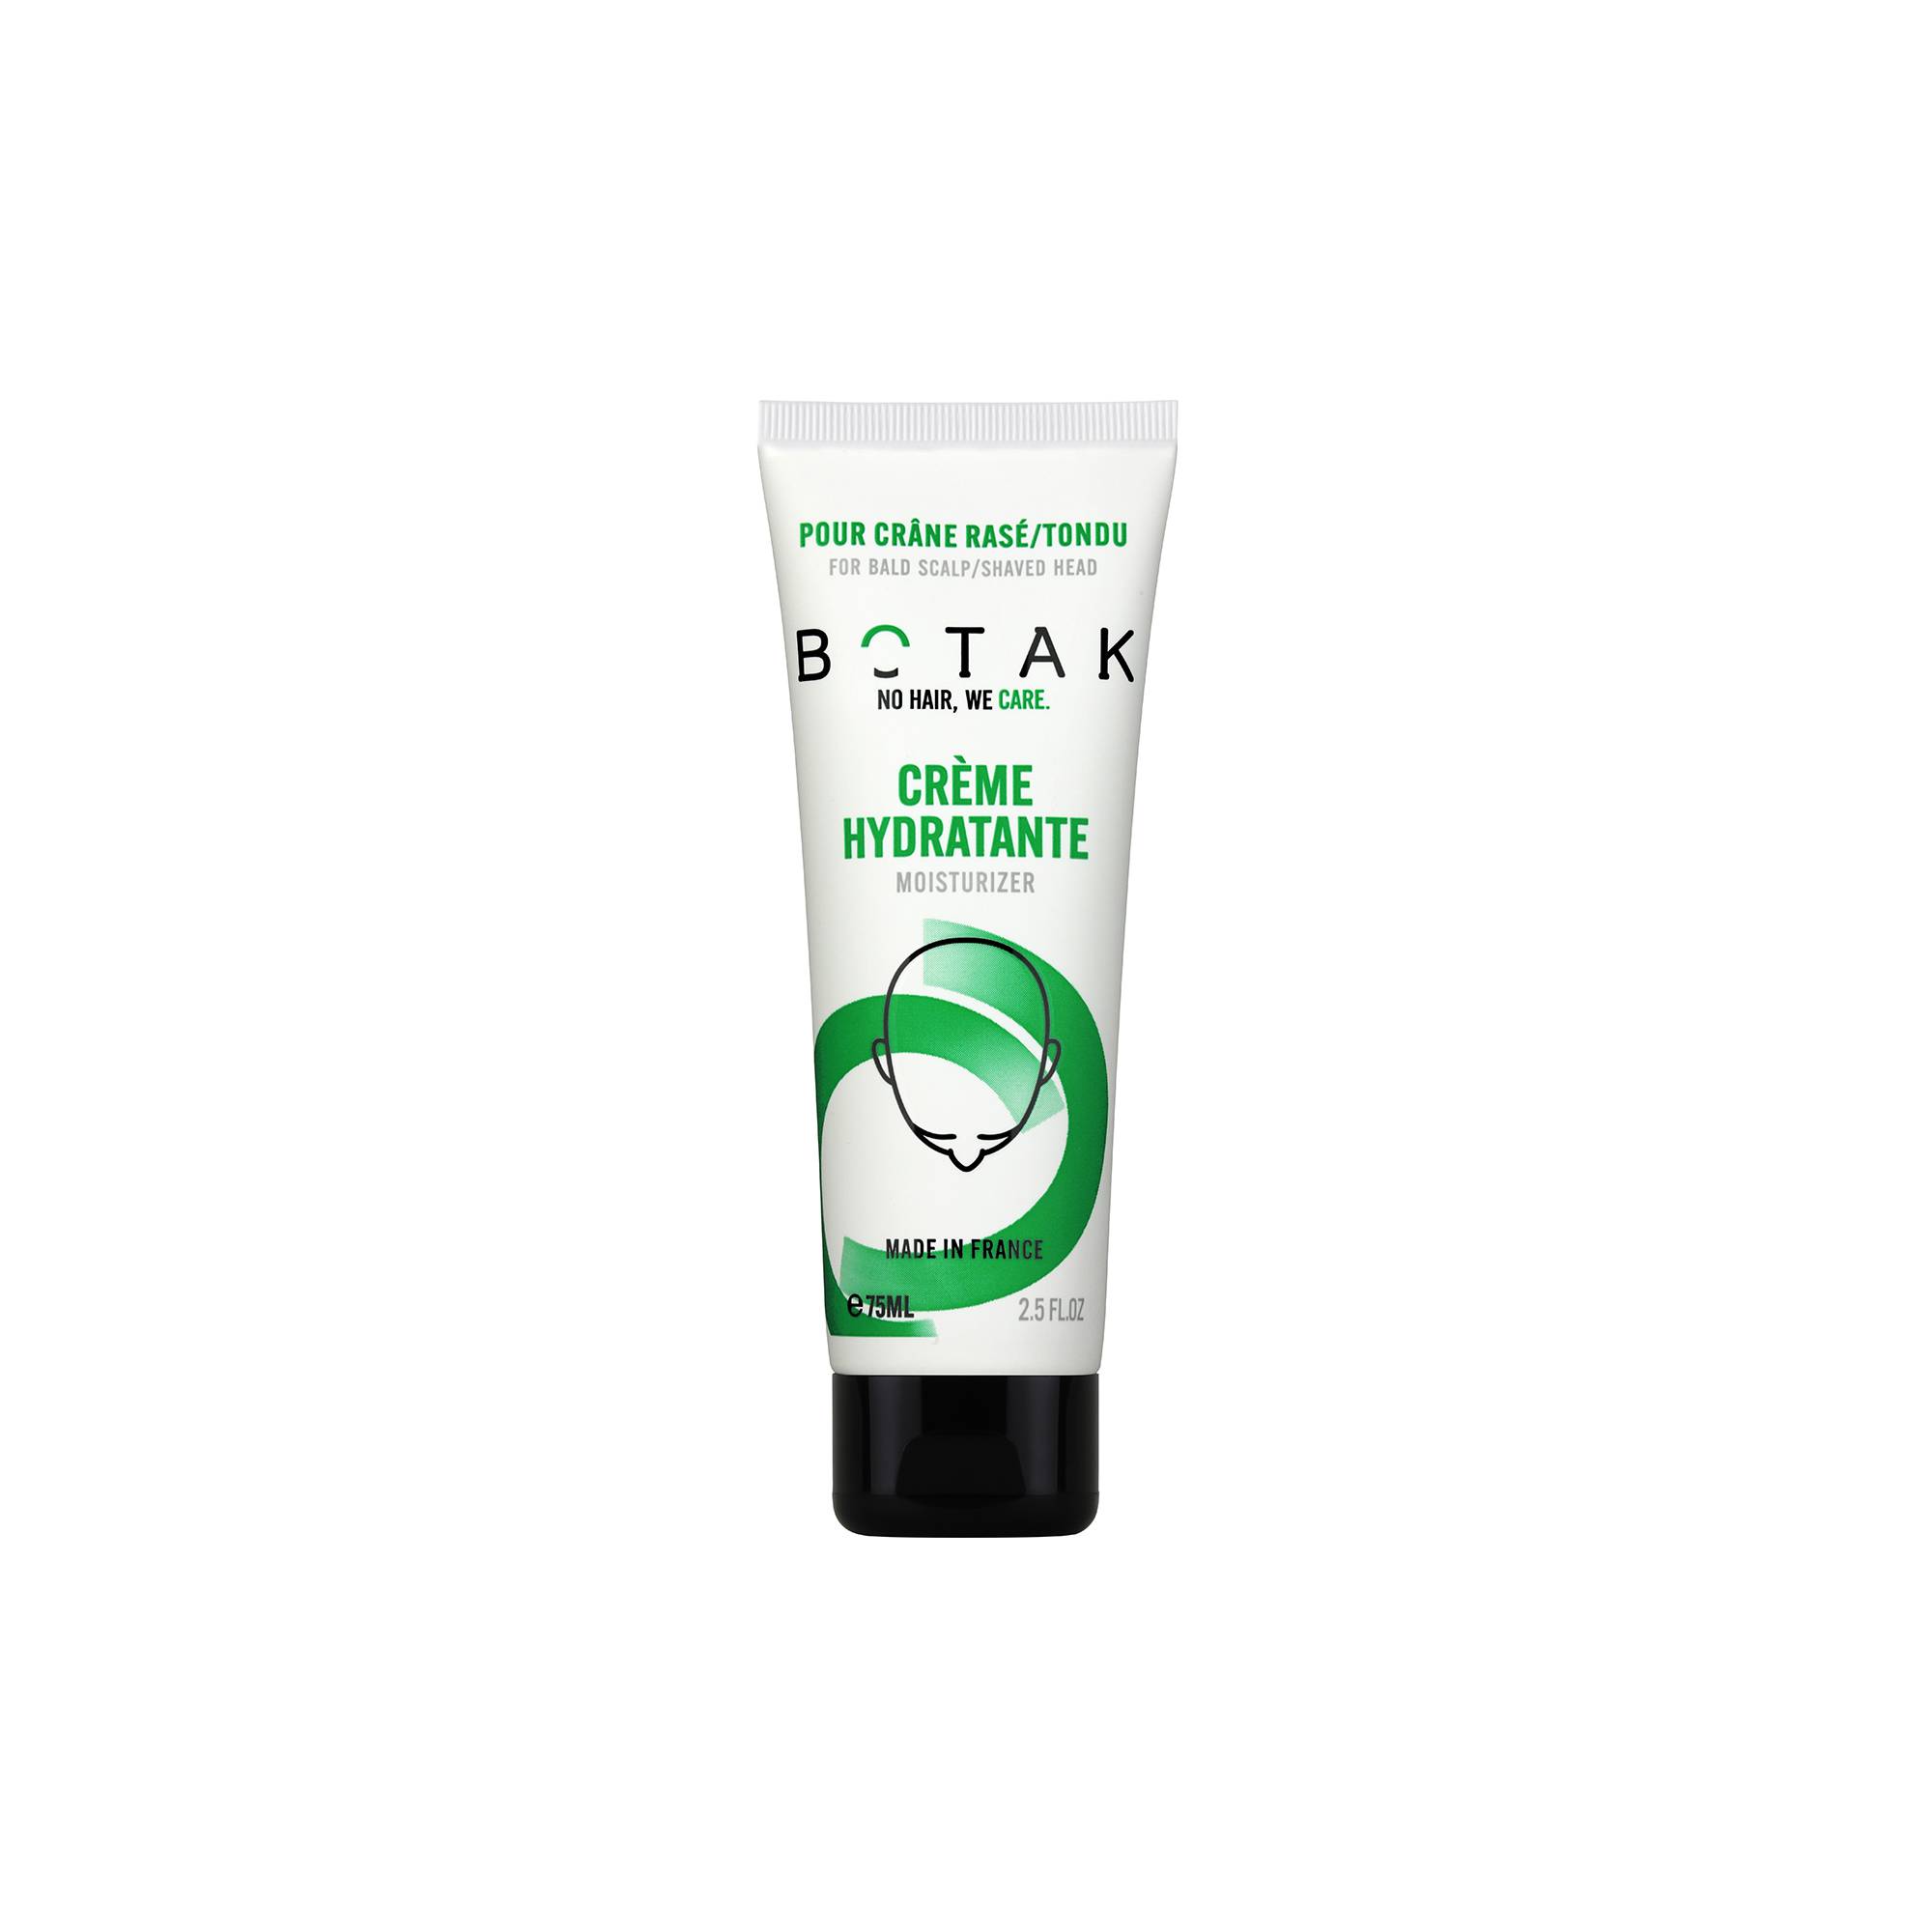 Crème Hydratante apaisante régénérante pour crâne rasé ou tondu de la marque Botak Contenance 75ml - 1